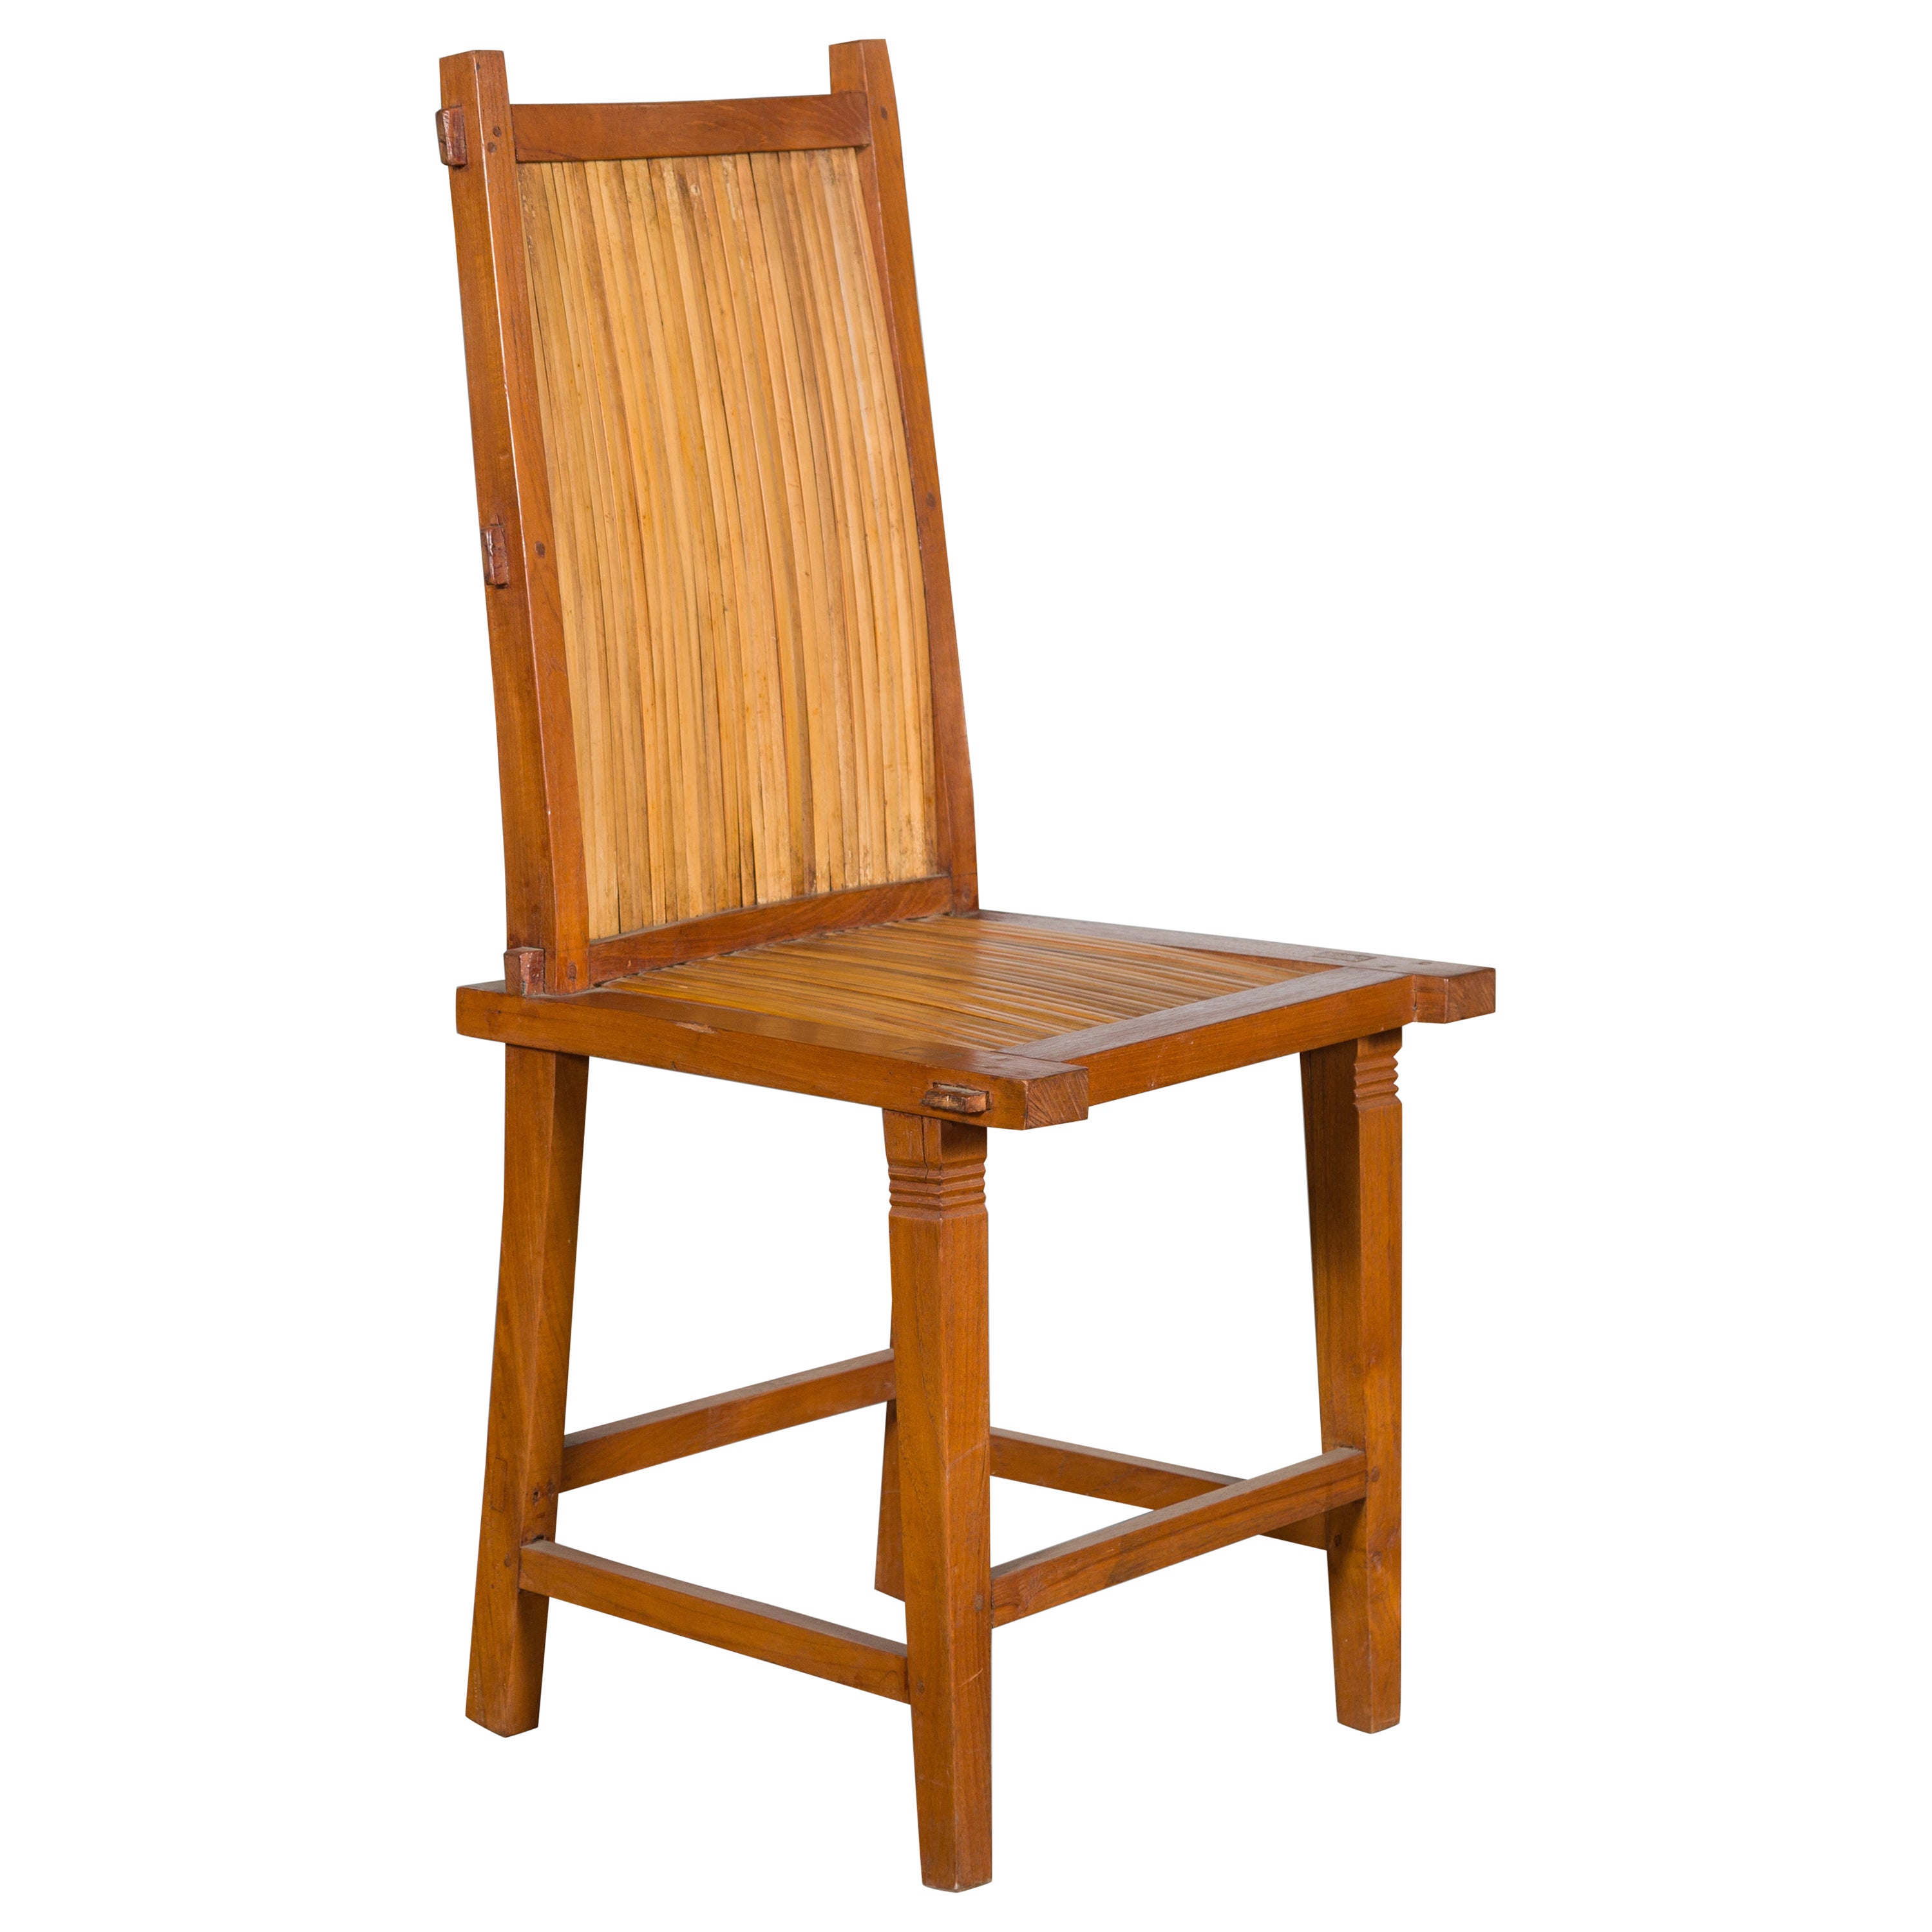 Chaise d'appoint japonaise rustique en bois vintage avec dossier et assise à lattes en bambou